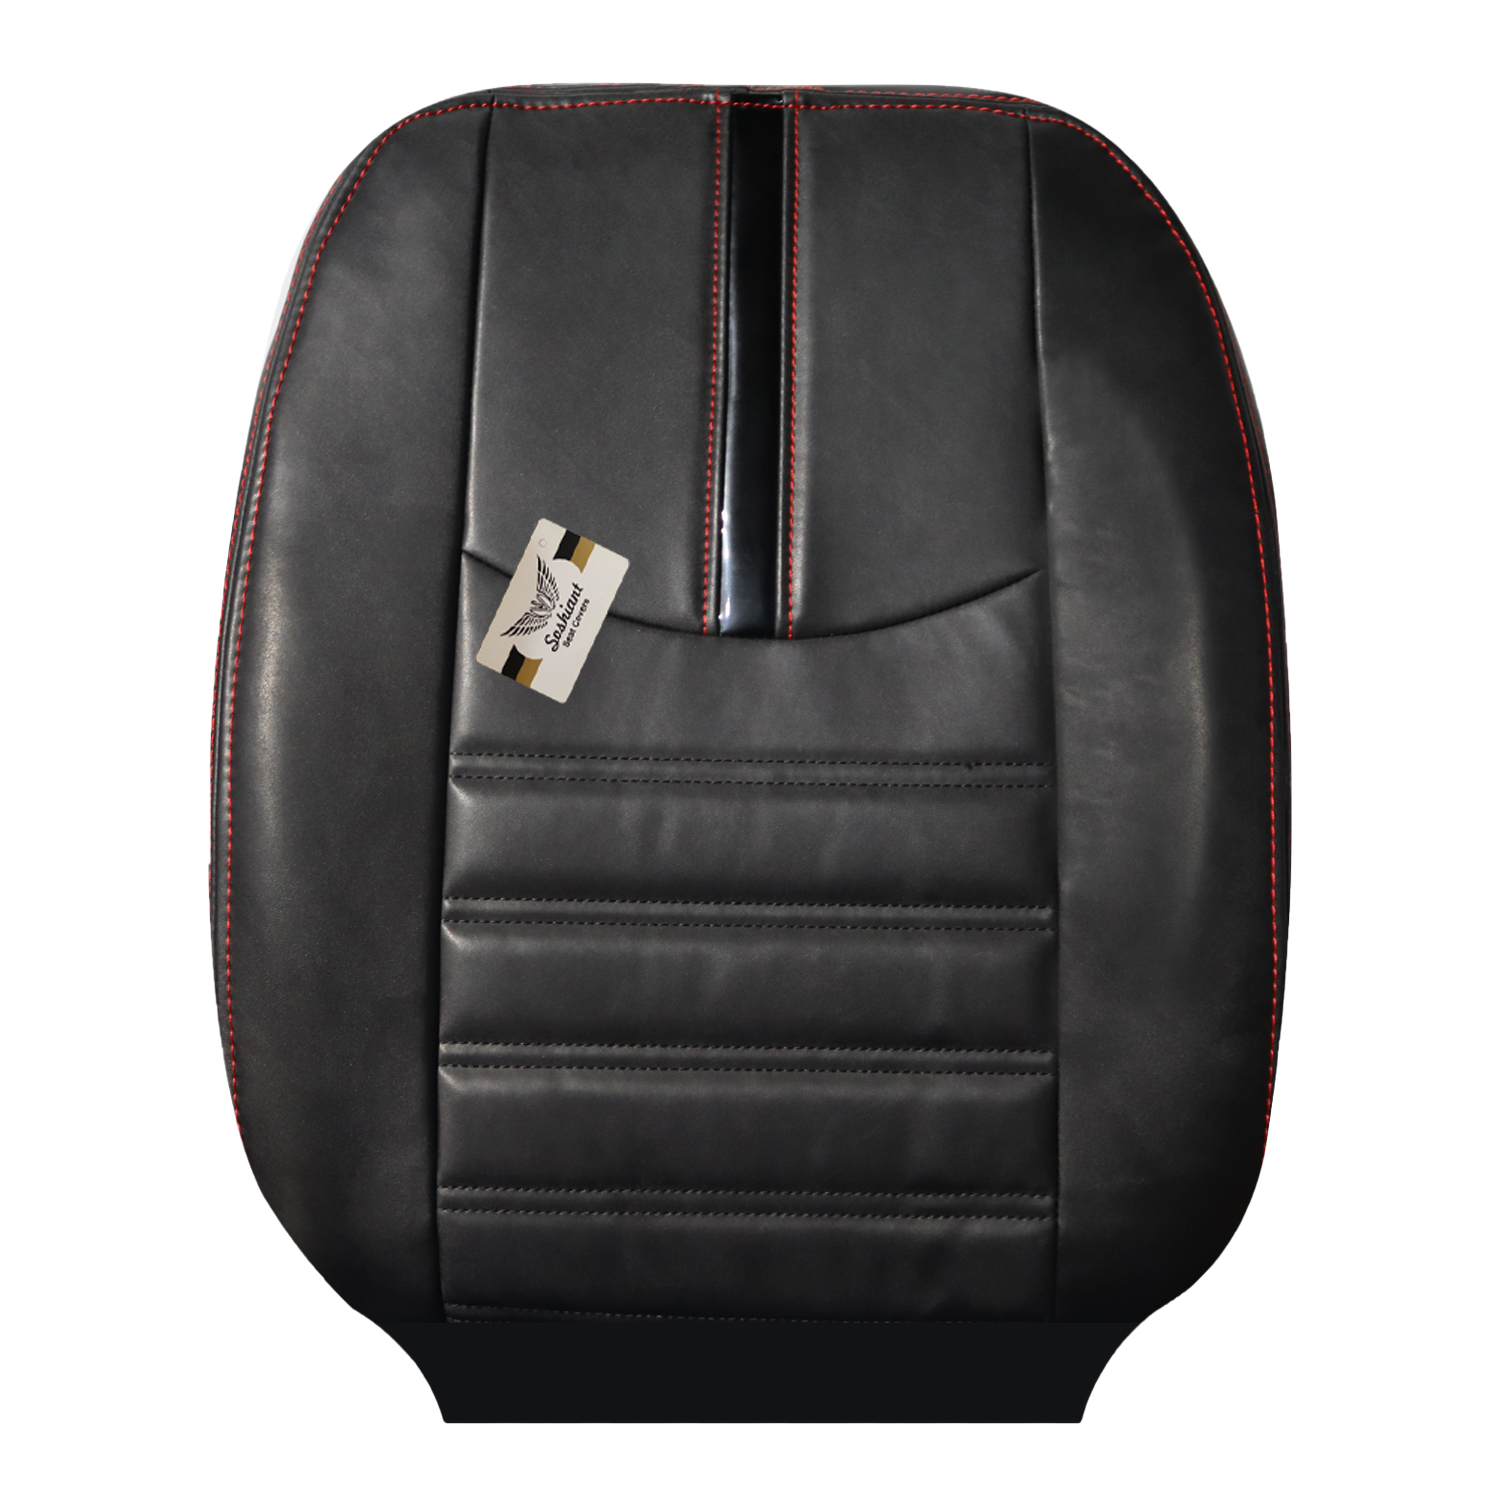 روکش صندلی خودرو سوشیانت مدل h1 مناسب برای پژو 207